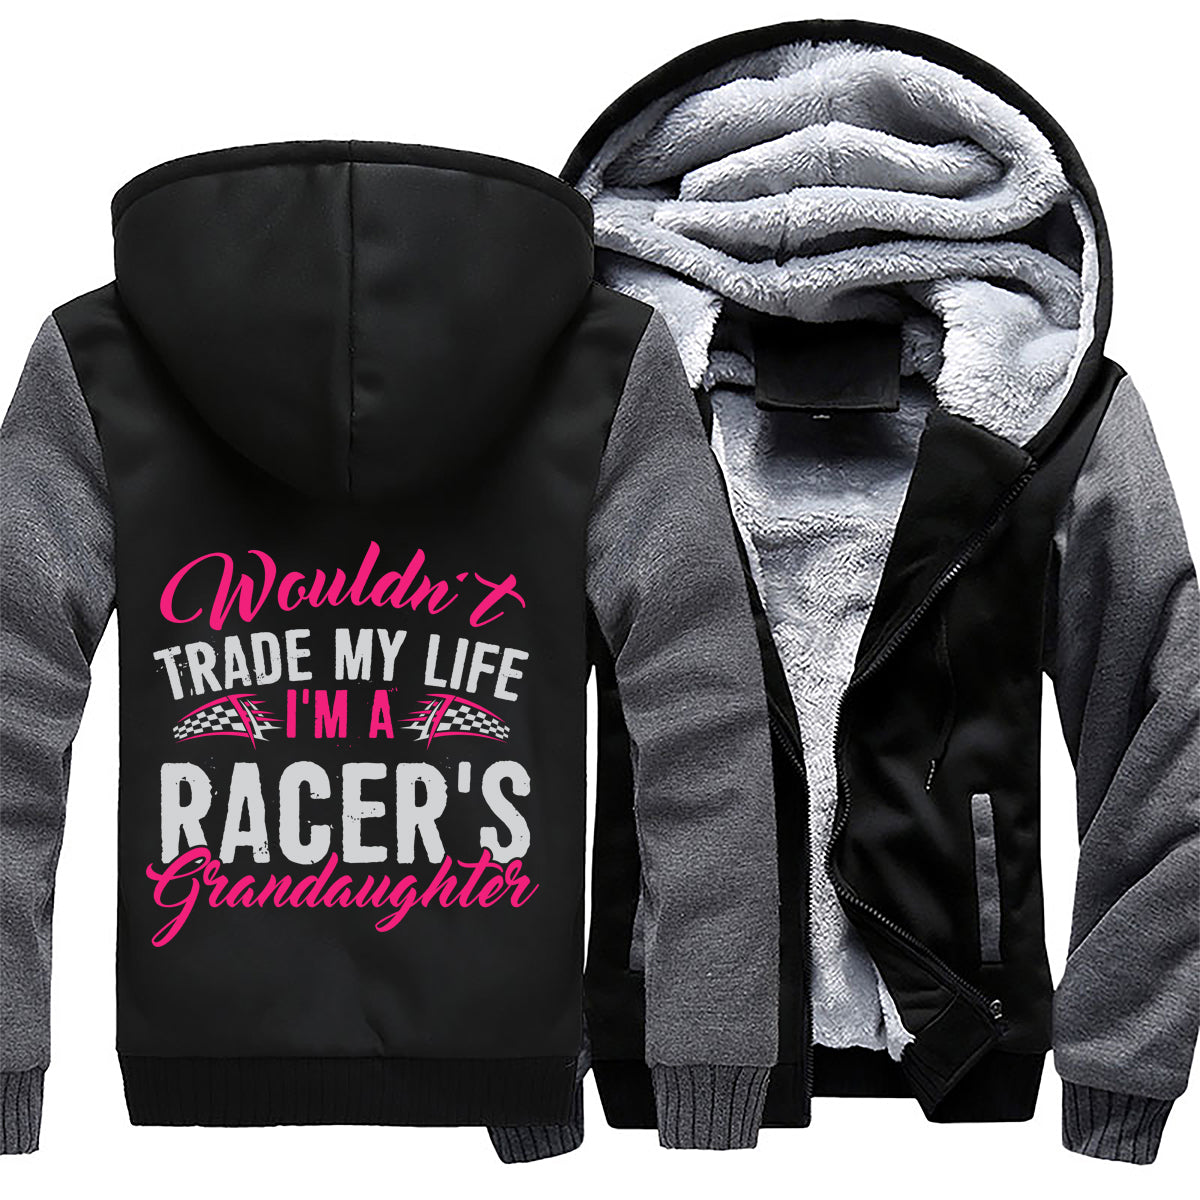 I'm A Racer's Granddaughter Jacket 